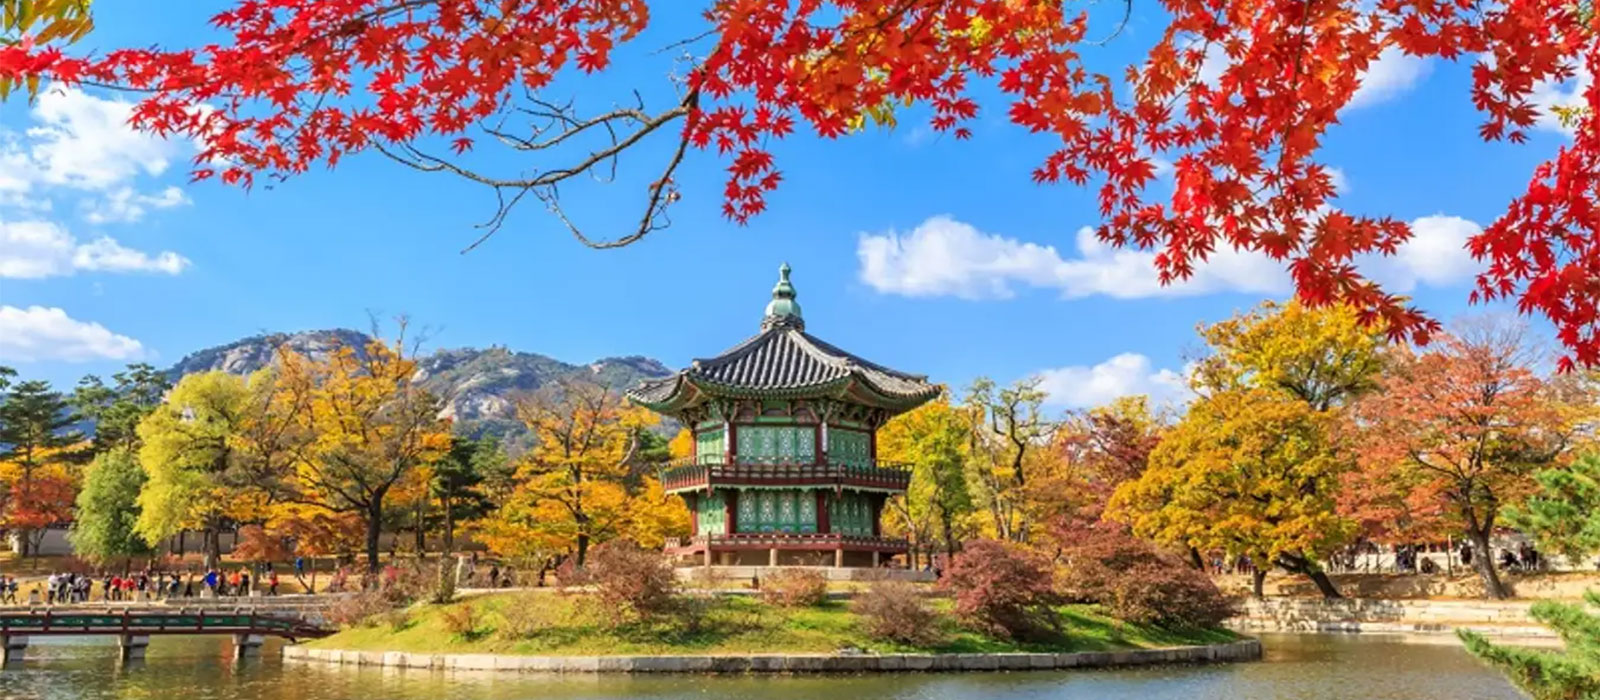 Tận hưởng tour du lịch Hàn Quốc theo cách riêng của bạn